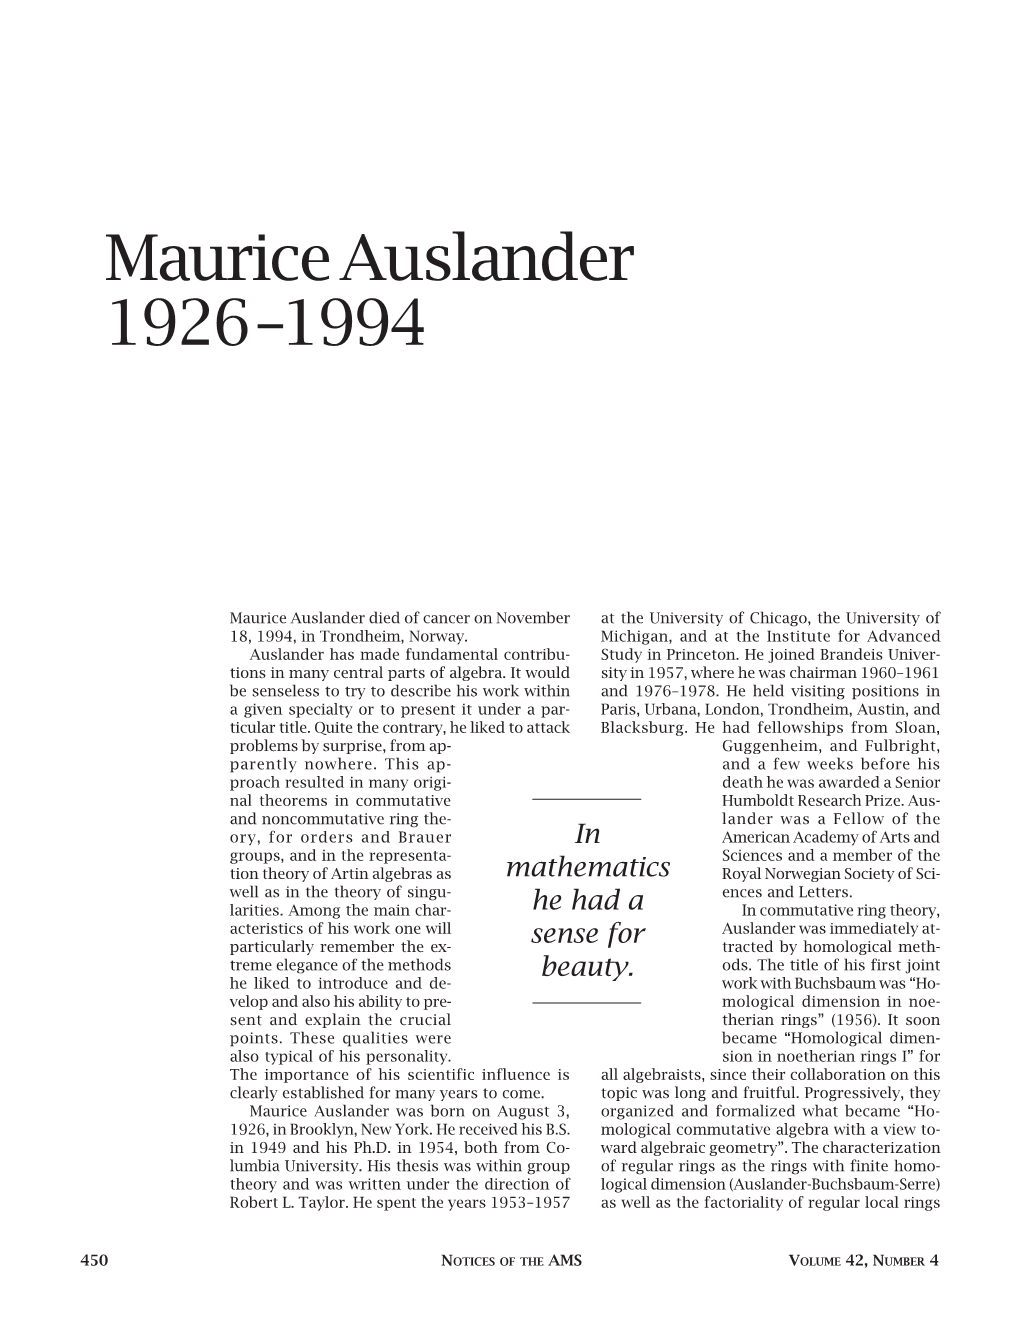 Maurice Auslander 1926-1994